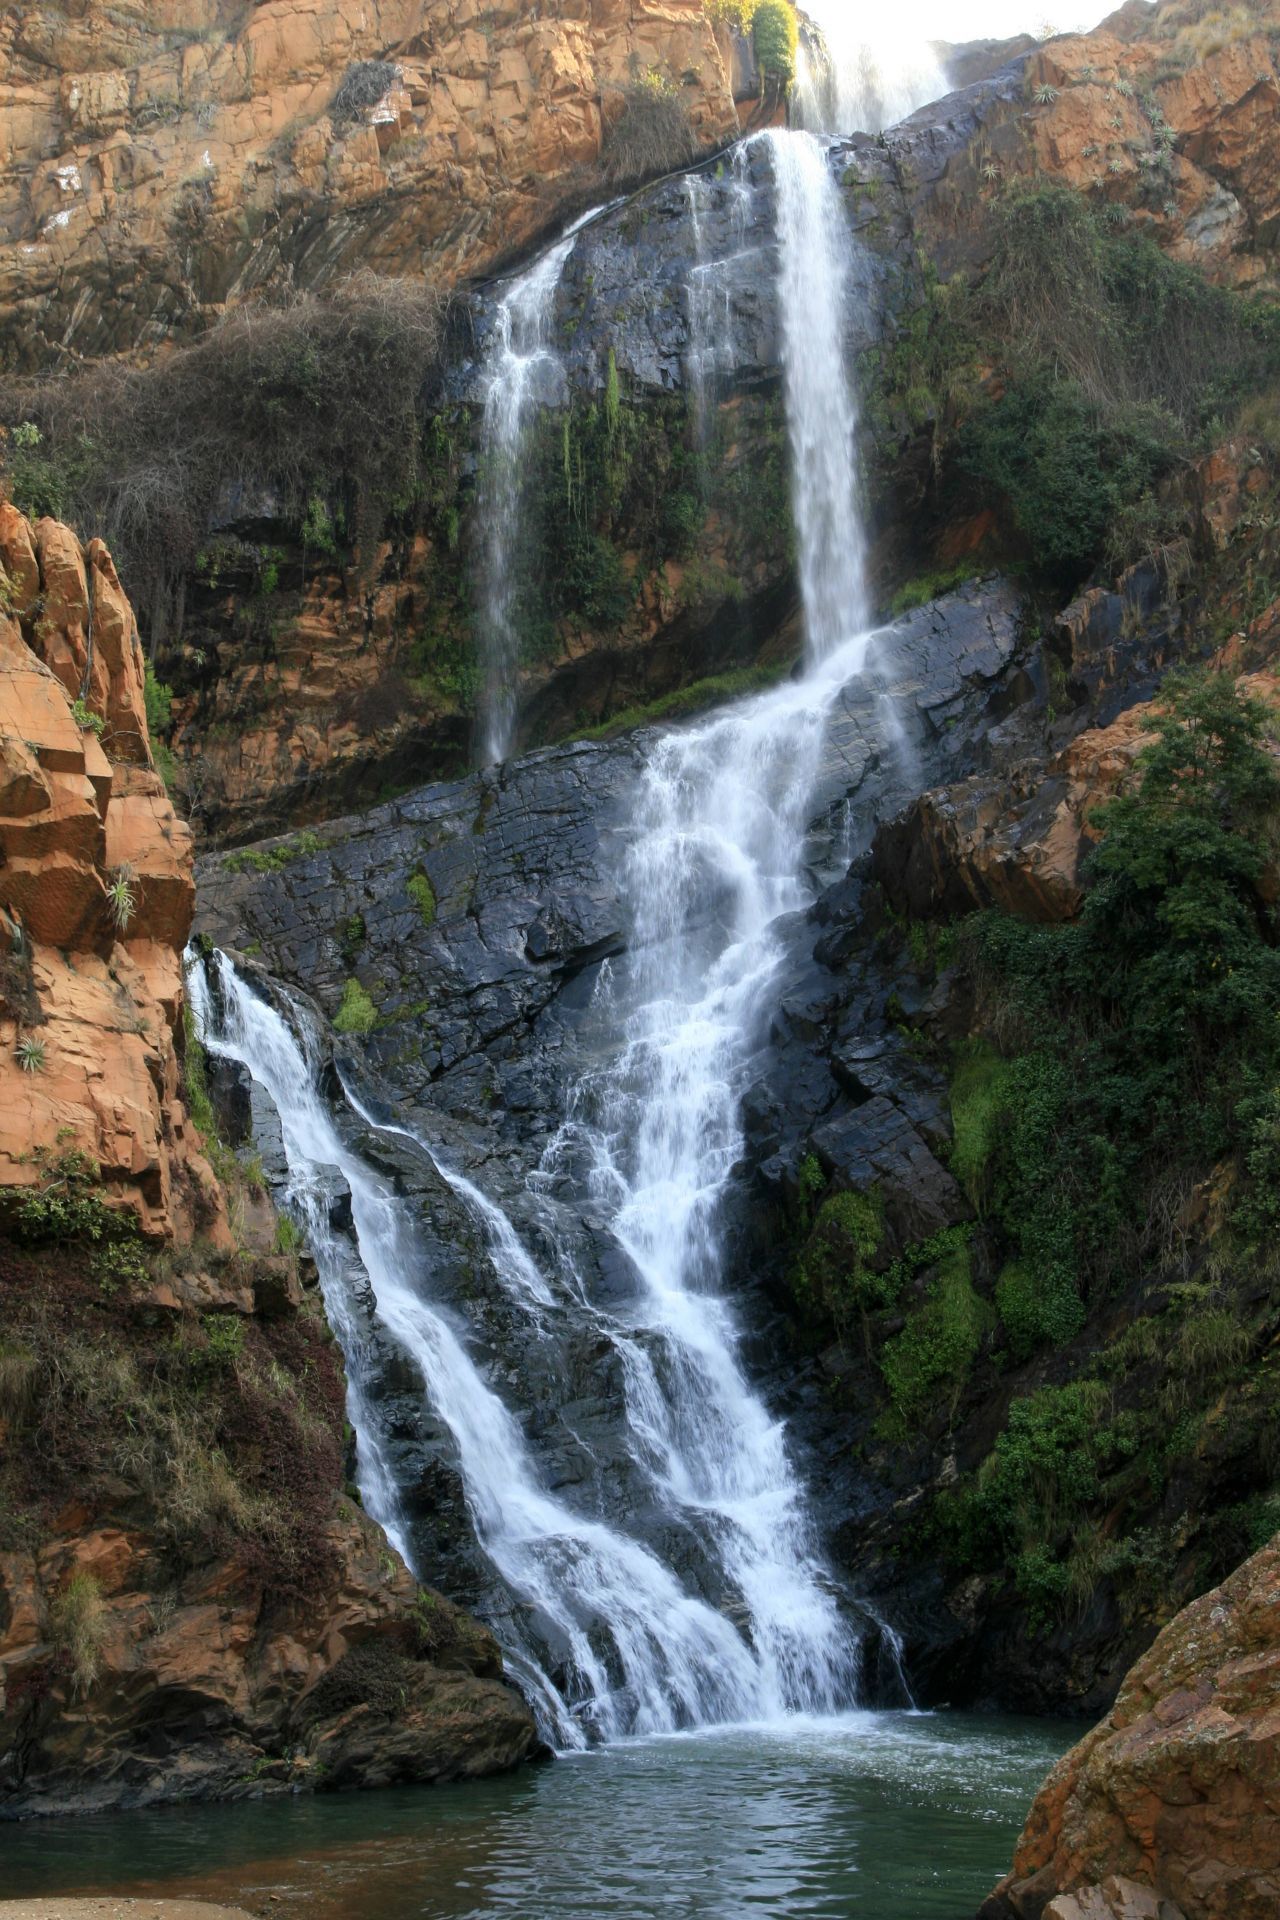 Witwatersrand ("Höhenrücken mit weißem Wasser") ist ein 200 Kilometer langer Gebirgszug in Südafrika, dessen mittlerer Teil den Großraum Johannesburg umfasst. Nach ihm wurde die Währung des Landes - der Rand - benannt. Und zwar deswegen, weil die Region über zahlreiche Goldvorkommen verfügt, die dem afrikanischen Staat großen Wohlstand brachten.
